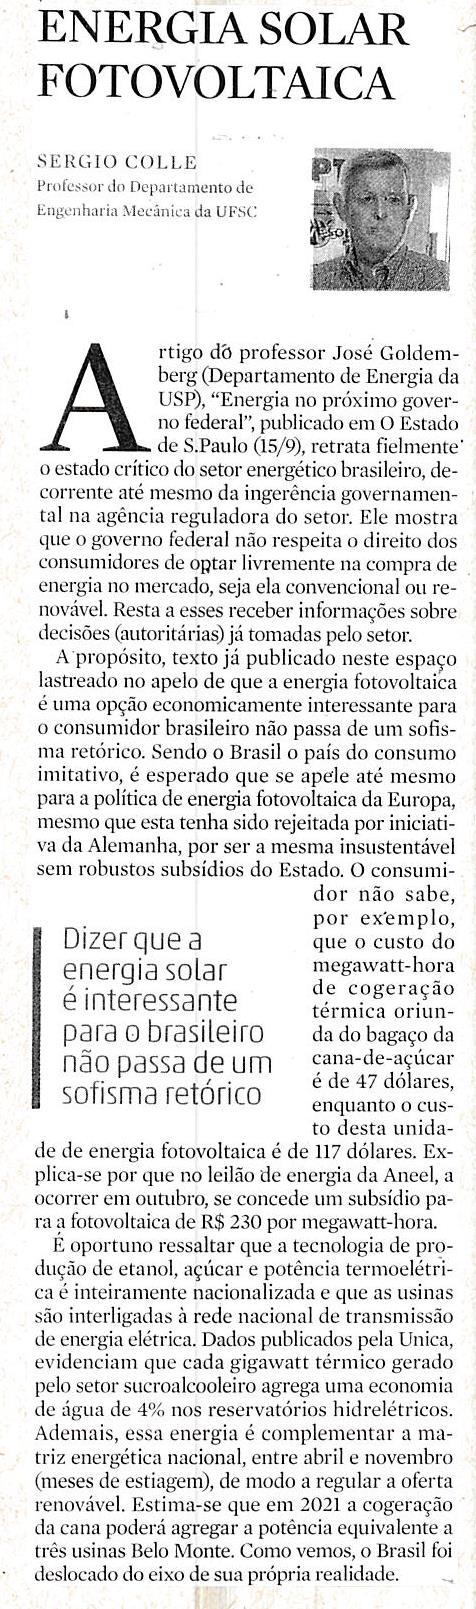 Diário Catarinense Artigo Energia Solar Fotovoltaica Energia Solar Fotovoltaica / Sérgio Colle / Professor / Departamento de